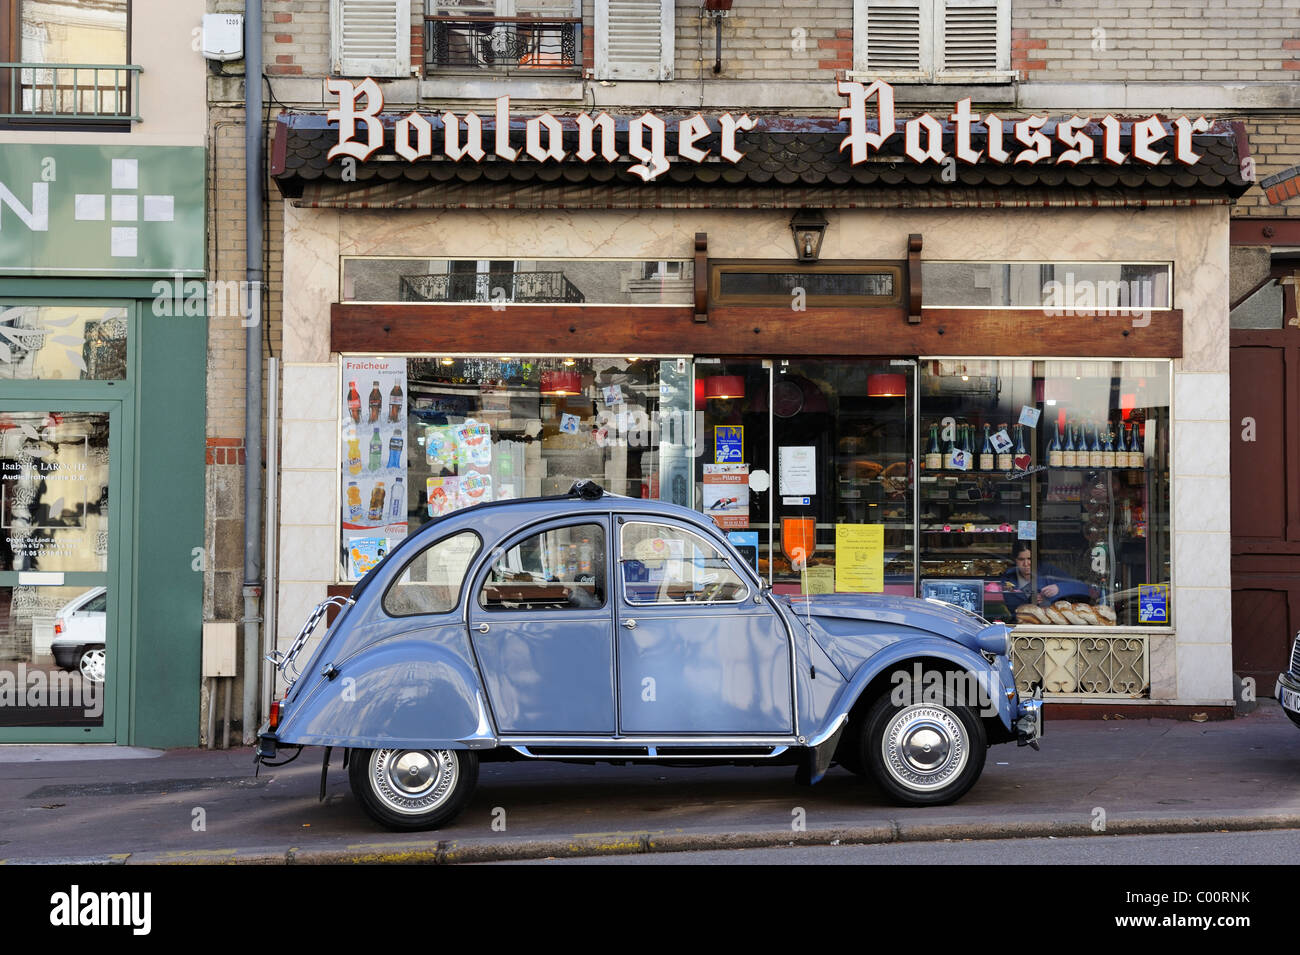 Stock Foto von einem blauen Citroen 2CV geparkt vor einem Boulanger-Geschäft in Limoges, Frankreich. Stockfoto